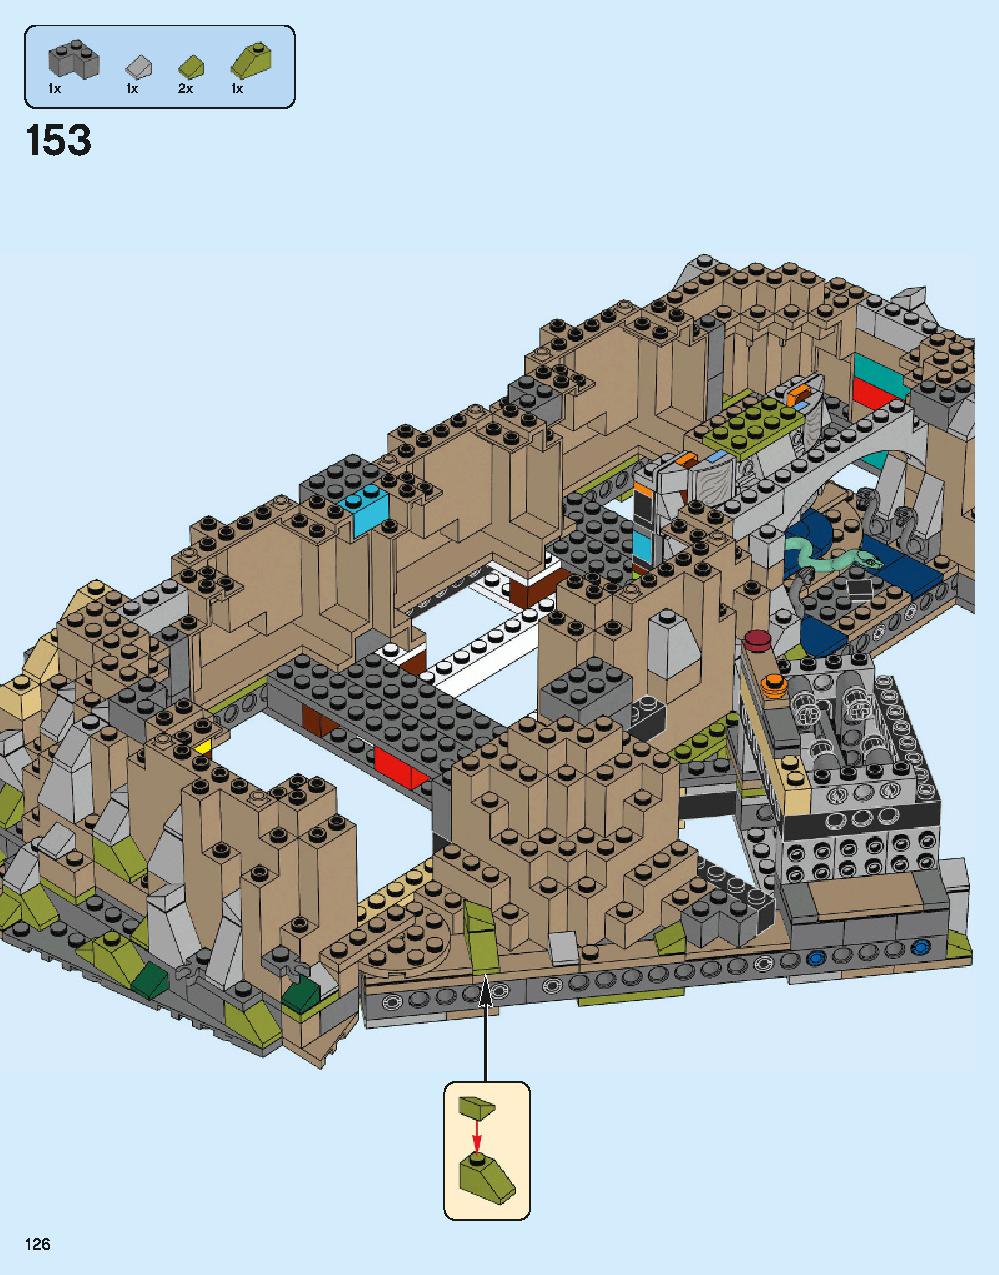 ホグワーツ城 71043 レゴの商品情報 レゴの説明書・組立方法 126 page